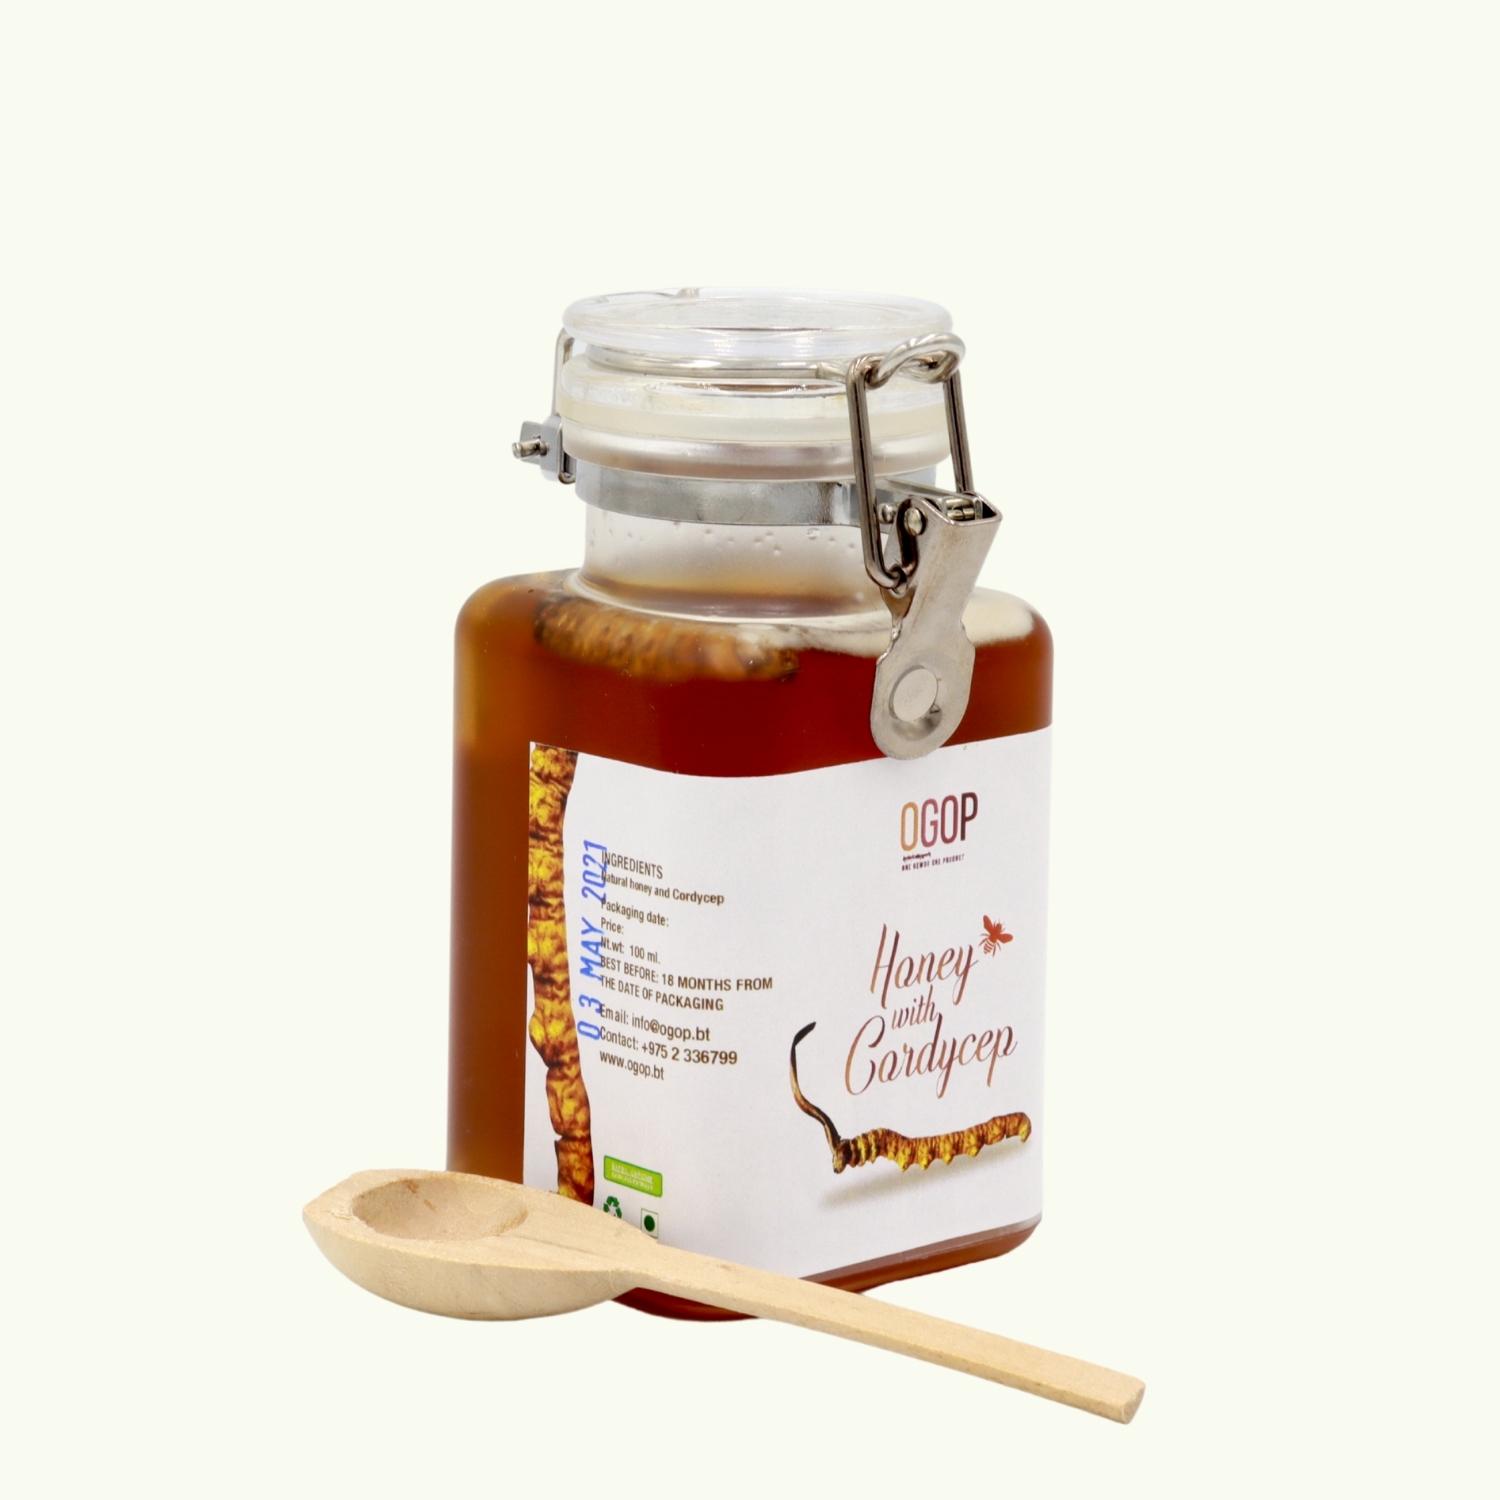 Honey with Cordyceps by Taste of Bhutan